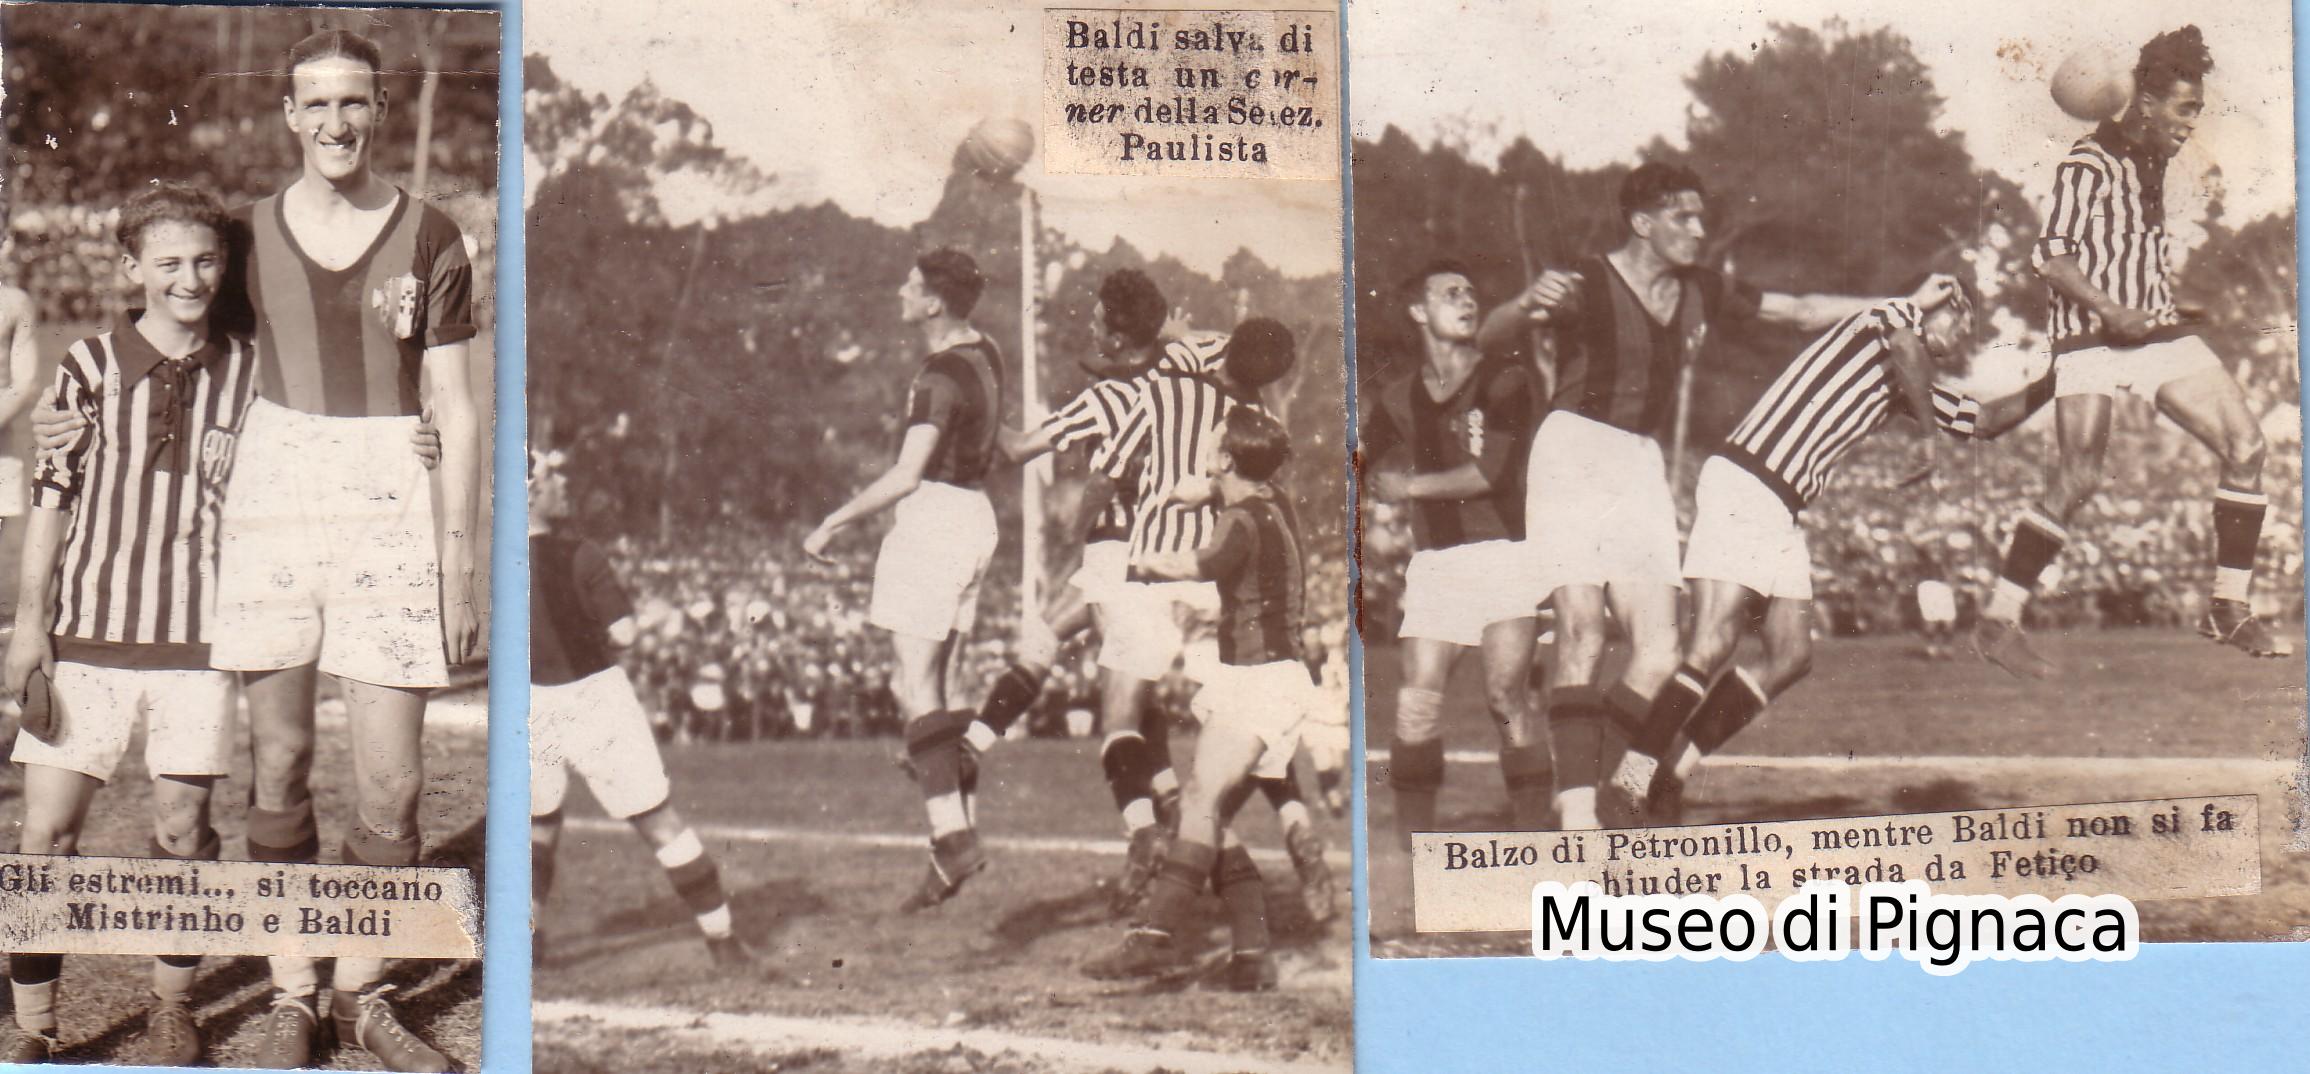 1929 (28 luglio) San Paulo - Baldi in azione contro la selezione paulista